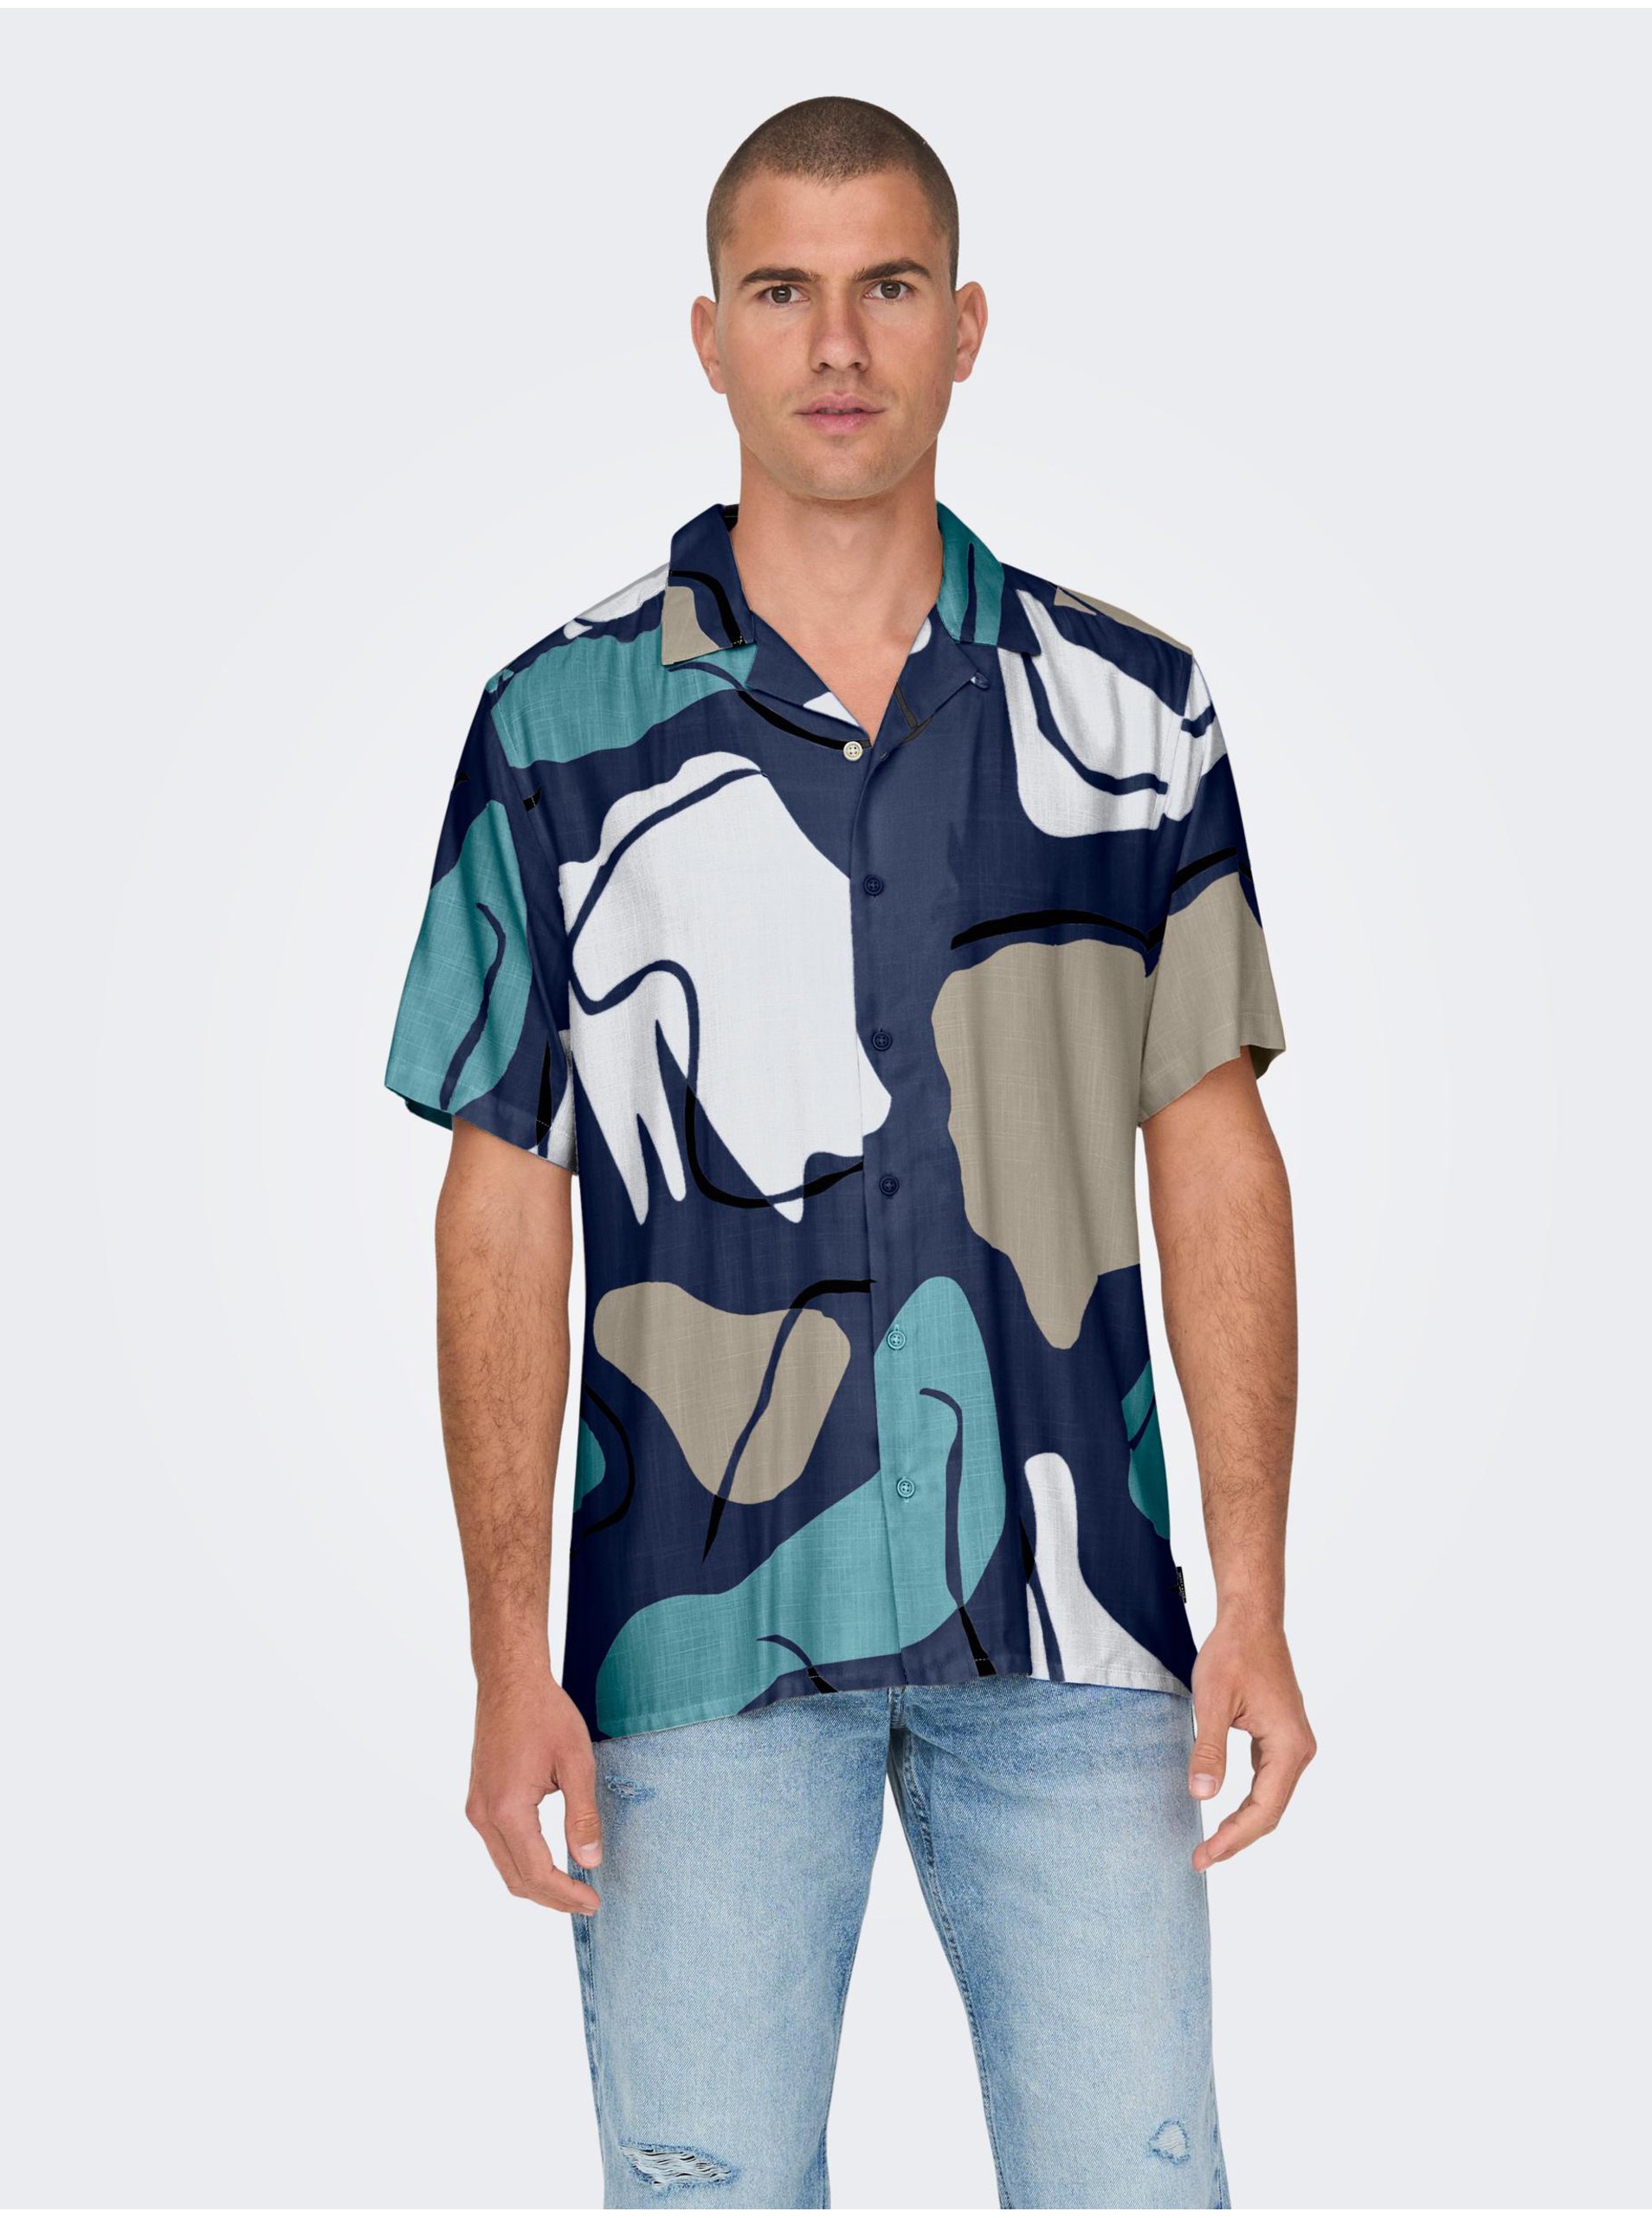 E-shop Tmavomodrá pánska vzorovaná košeľa s krátkym rukávom ONLY & SONS Dab